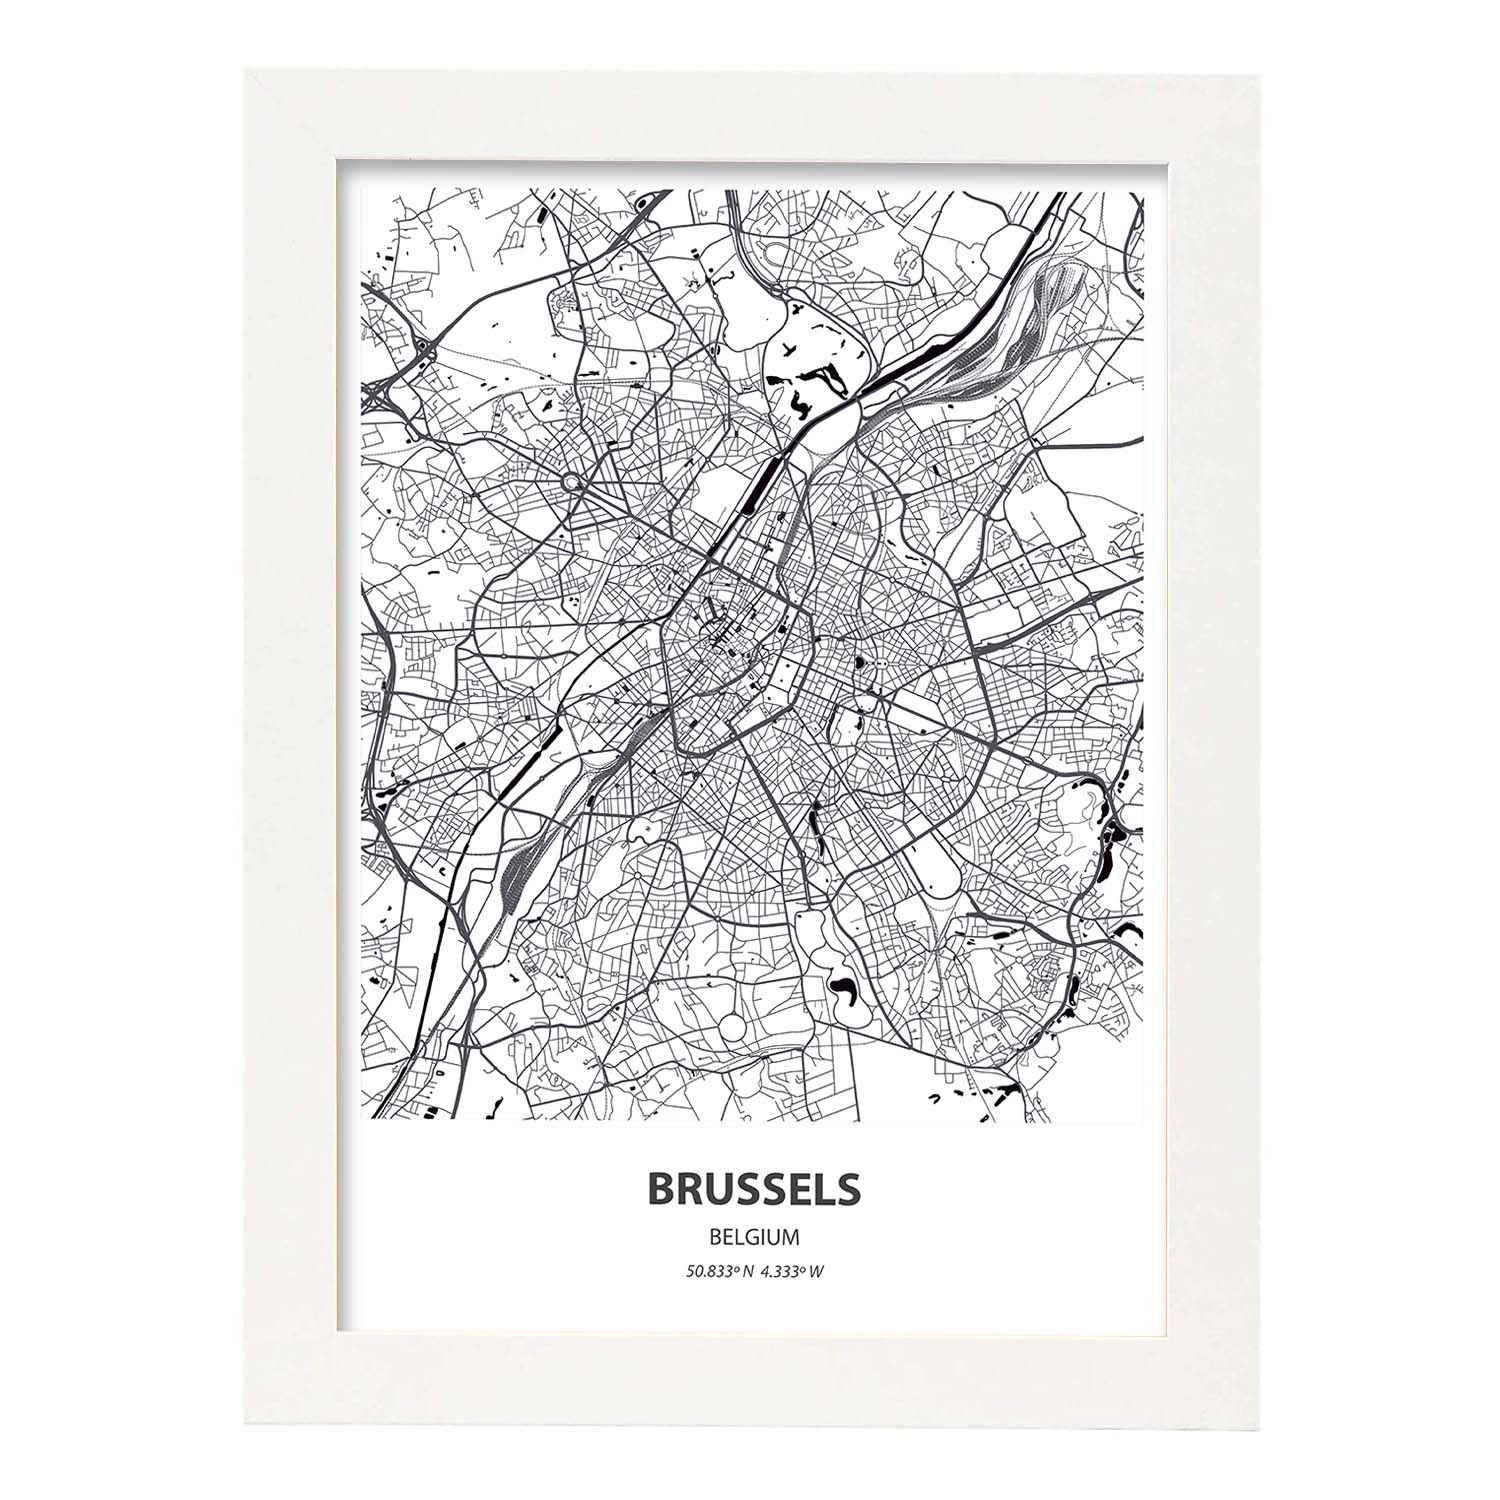 Poster con mapa de Brussels - Belgica. Láminas de ciudades de Holanda y Bélgica con mares y ríos en color negro.-Artwork-Nacnic-A4-Marco Blanco-Nacnic Estudio SL